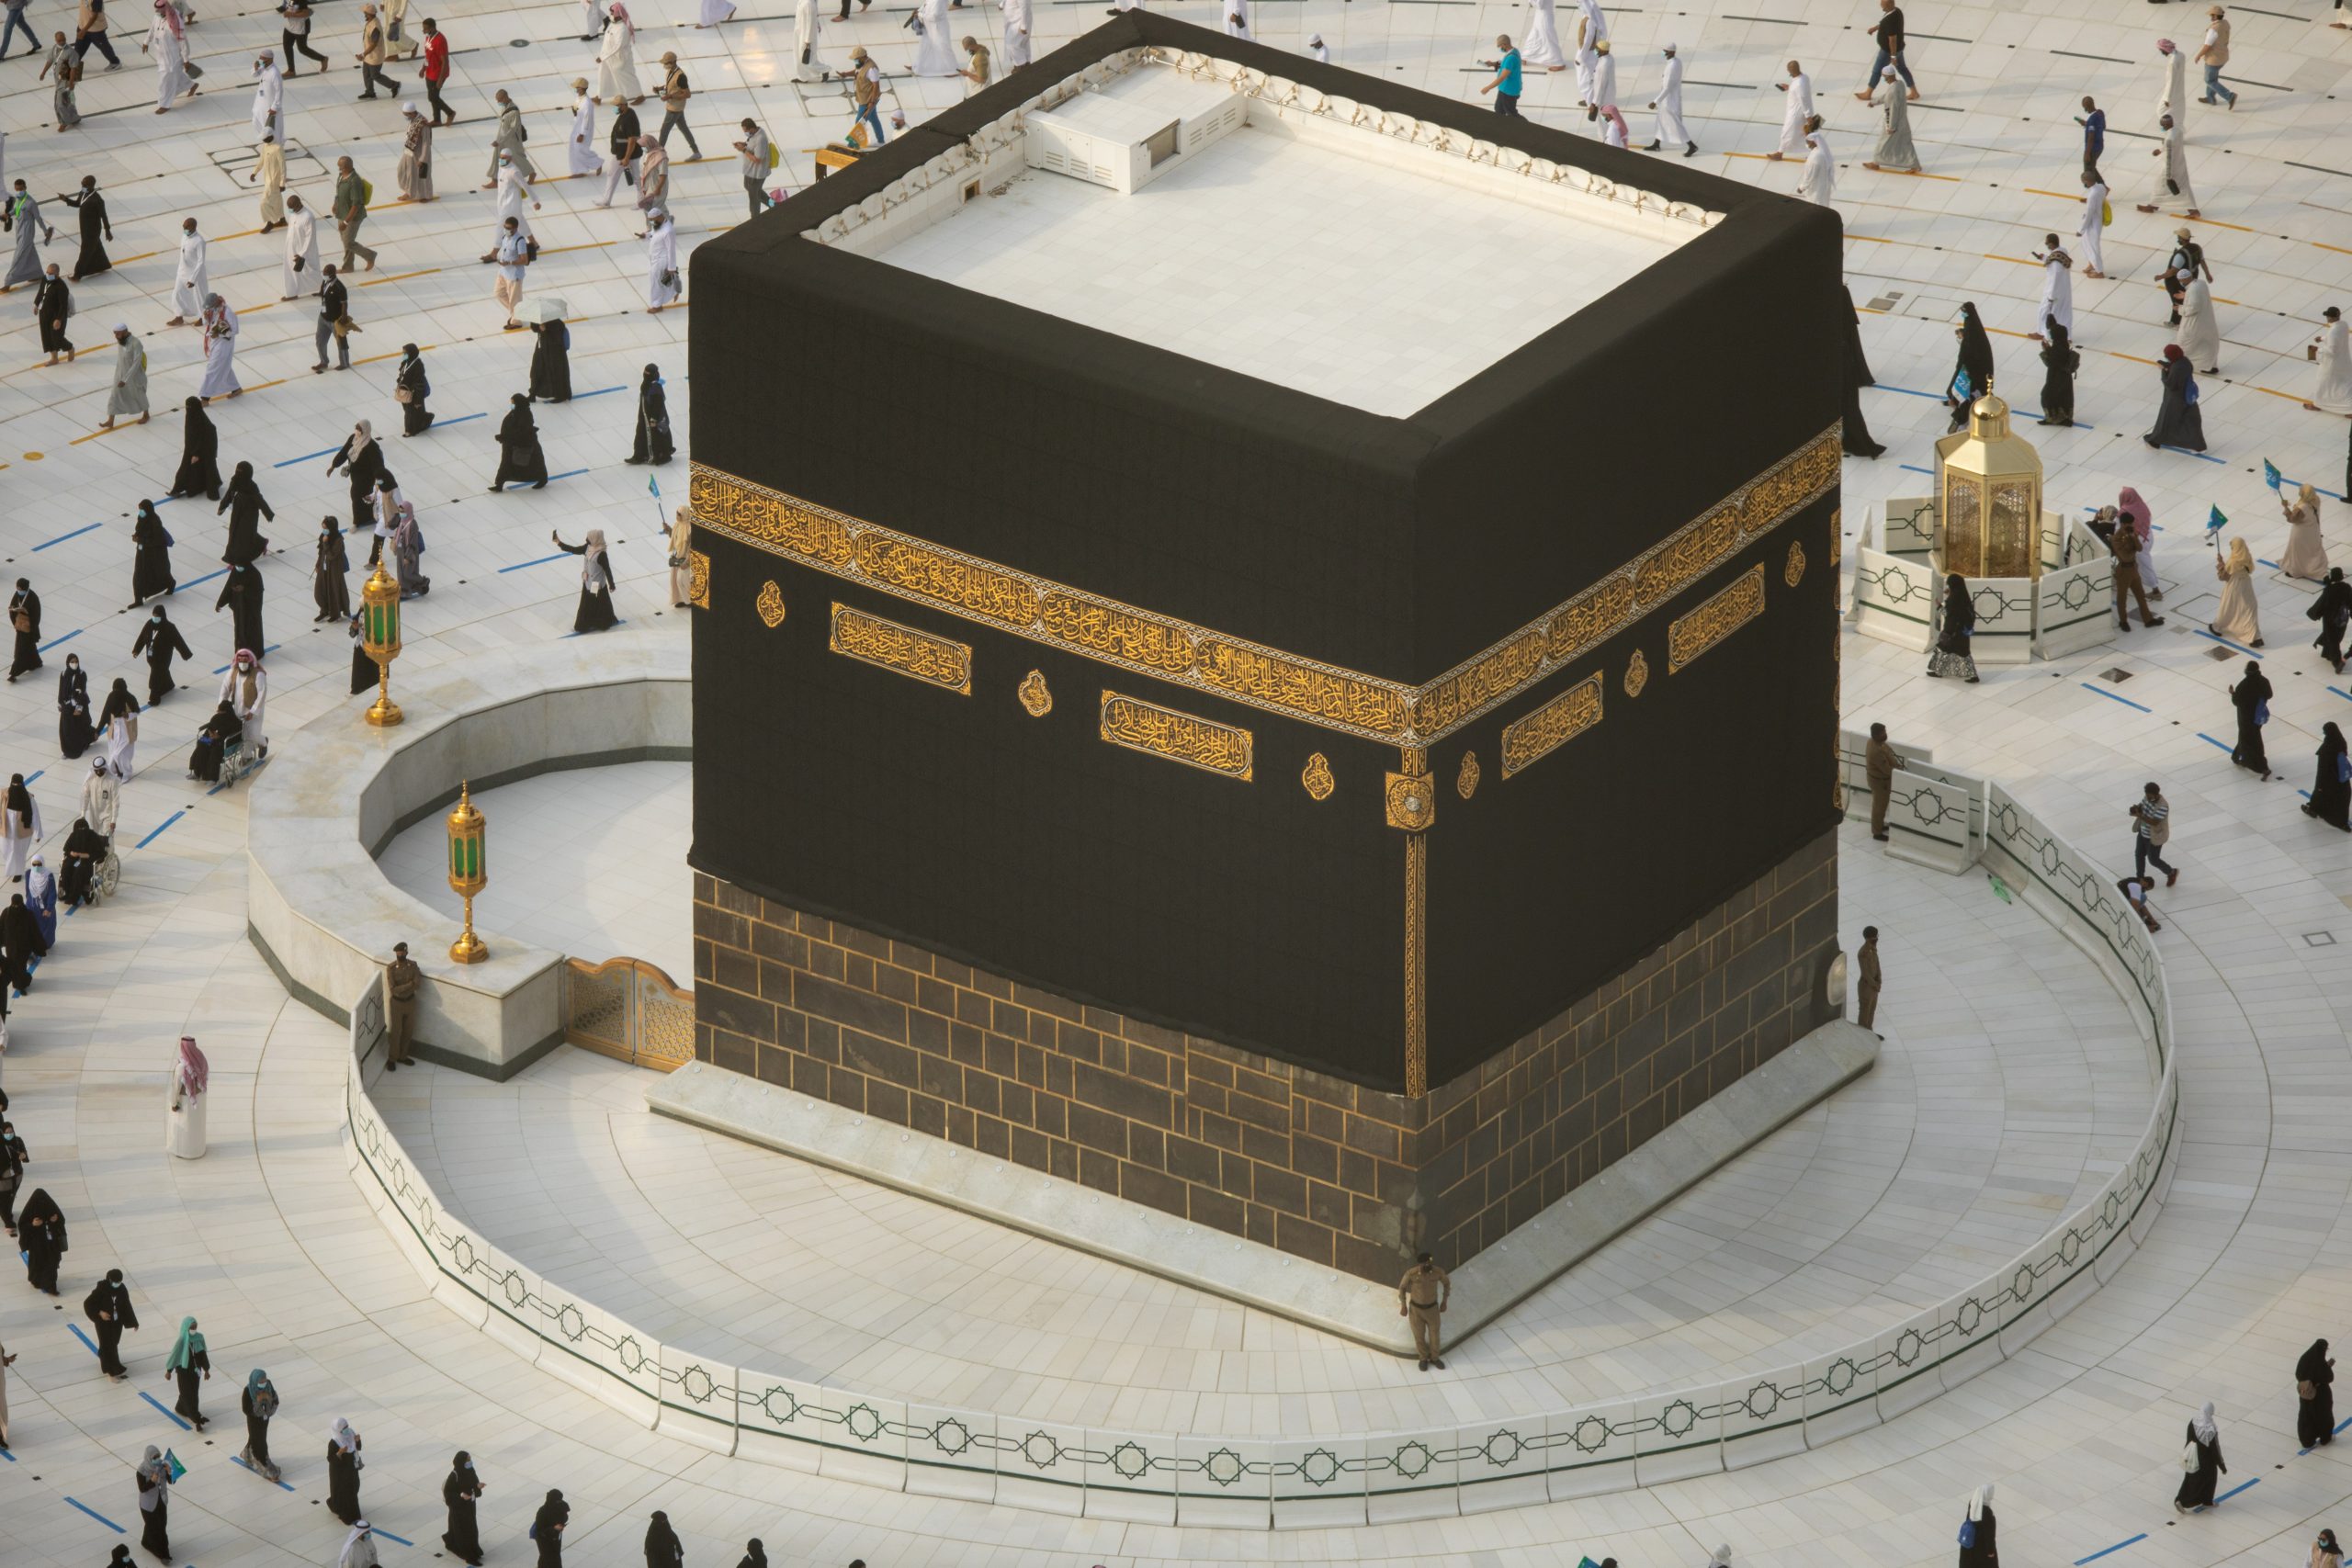 Hajj1442 – Over 450,000 people in Saudi Arabia apply for hajj